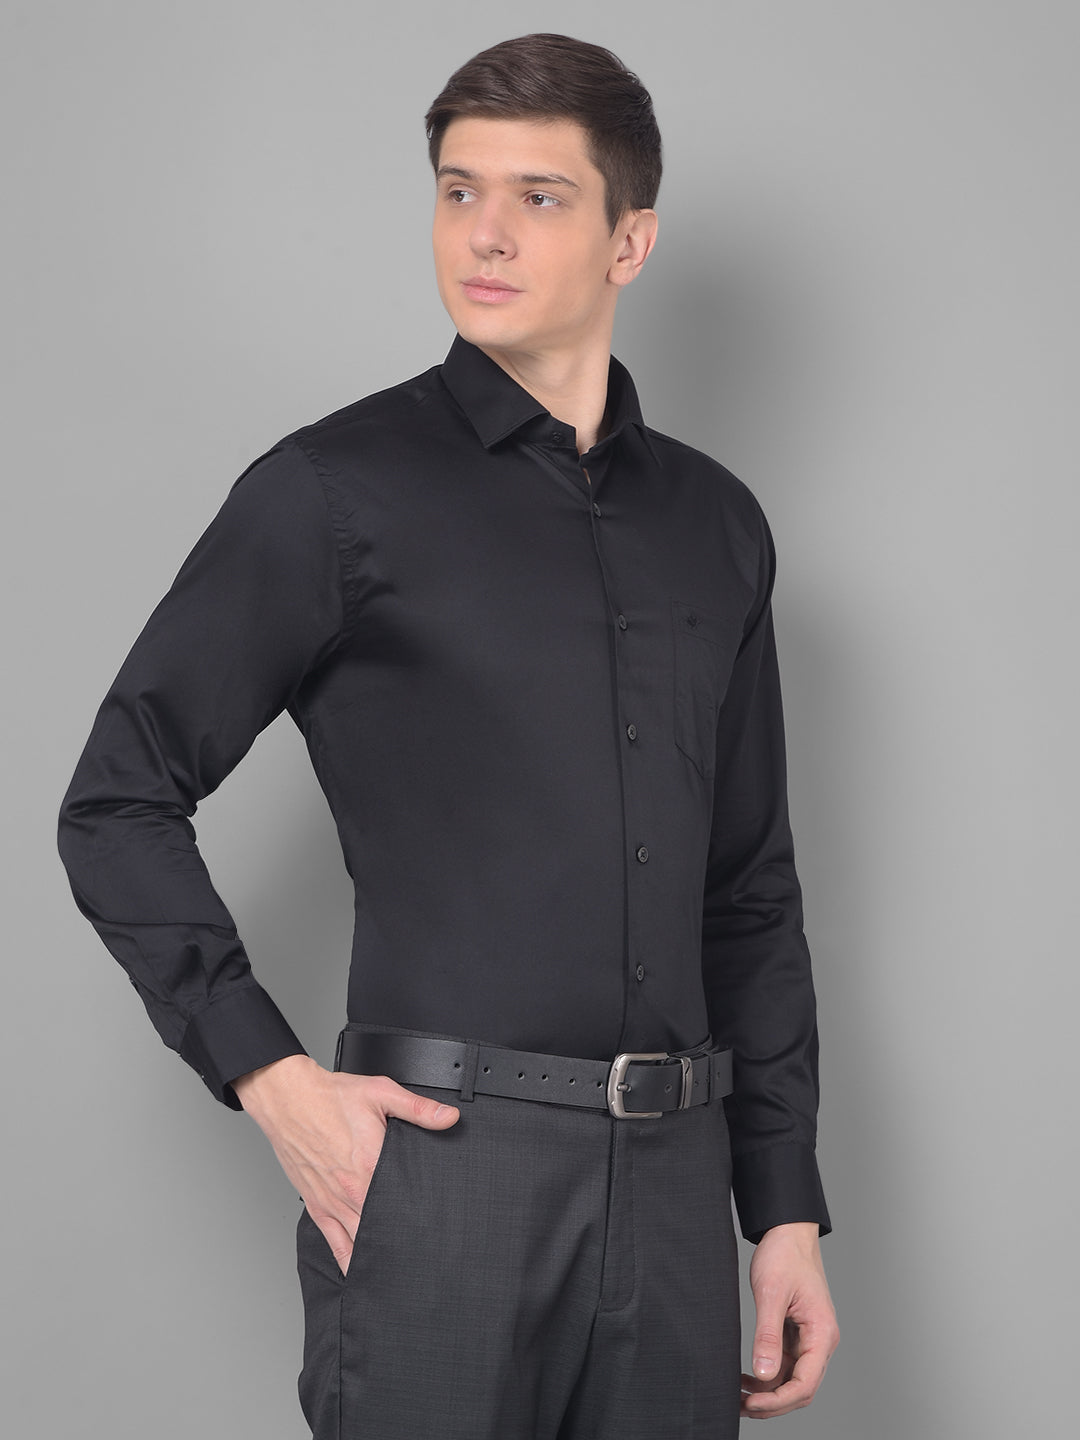 cobb solid black smart fit formal shirt